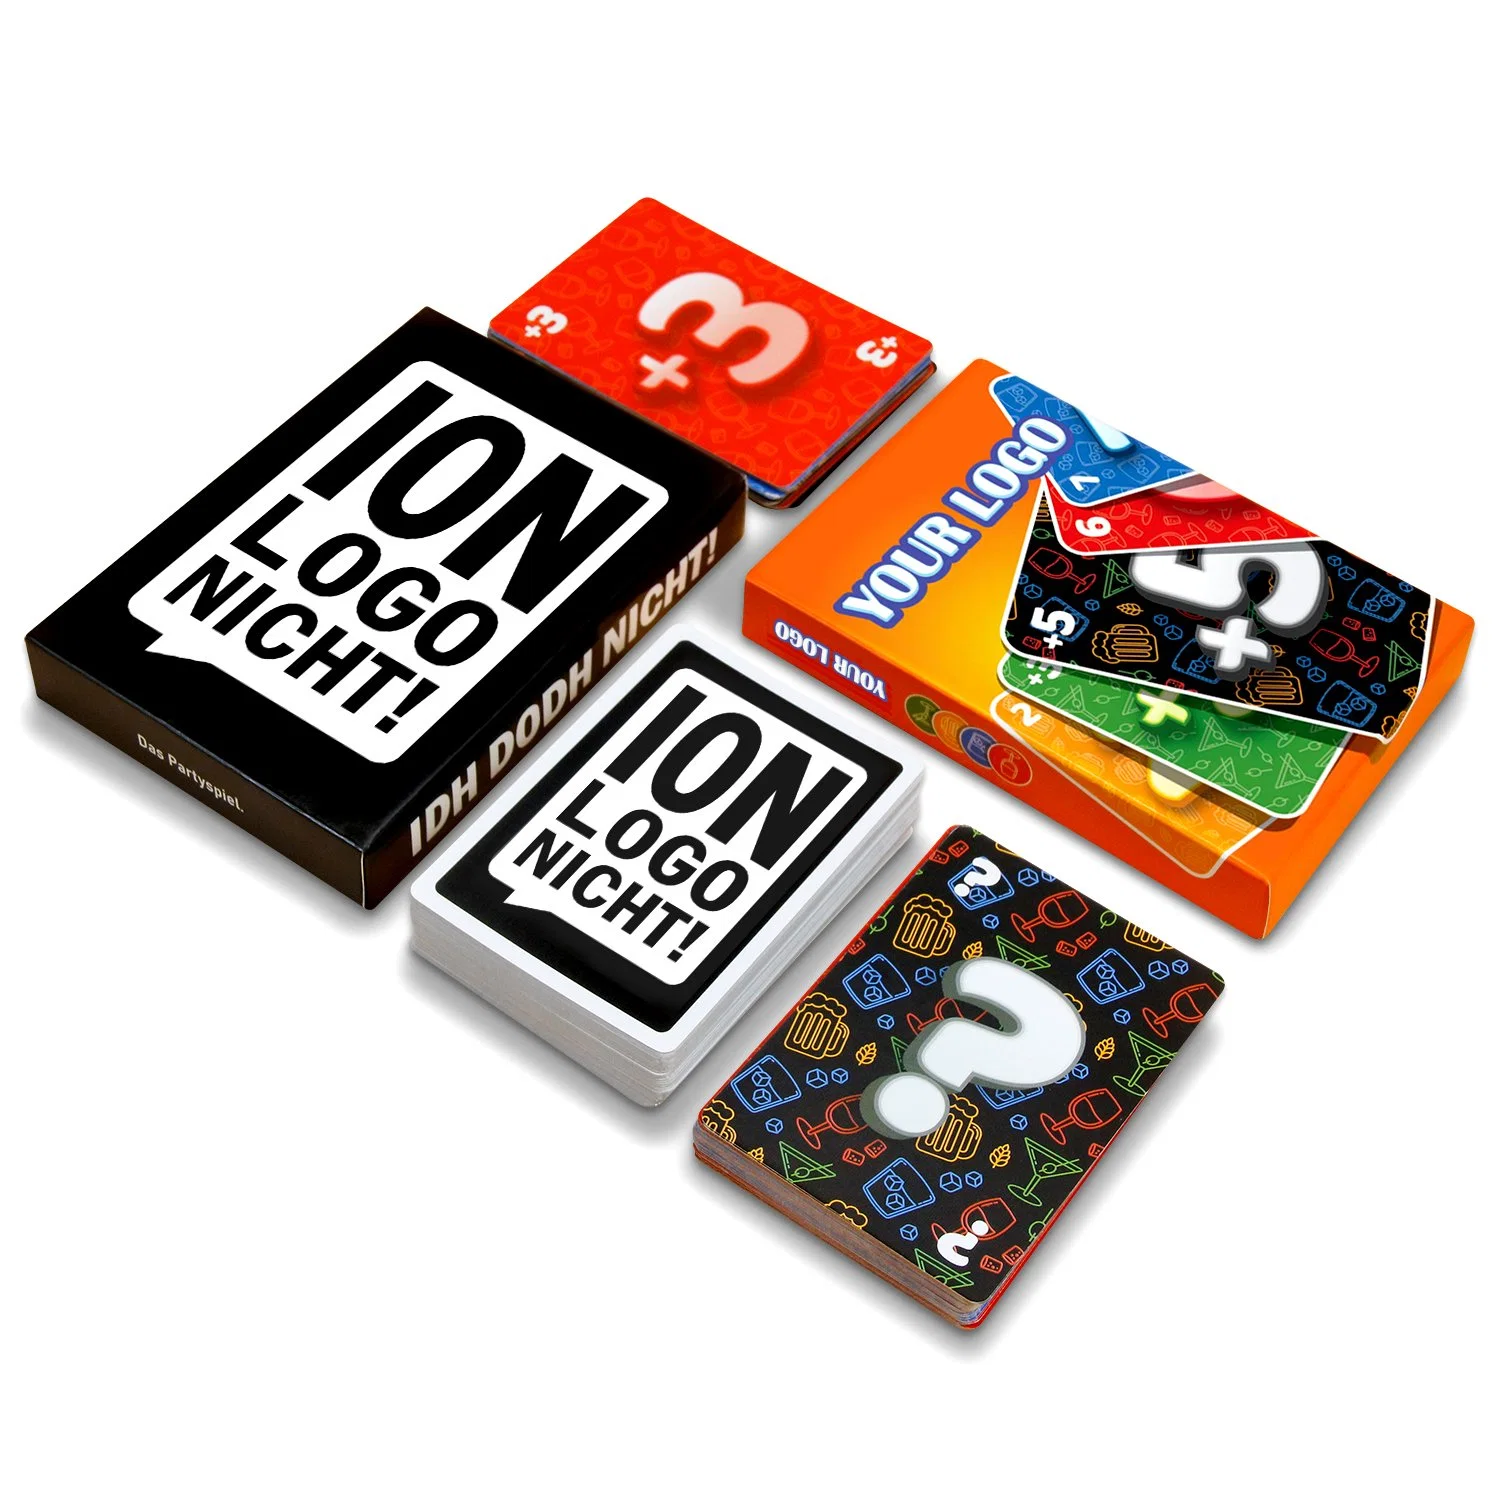 الشركة المصنعة بطاقات المشاعر الكبيرة القابلة للطباعة مطابقة لعبة لوحة الألعاب طباعة بطاقة ألعاب مخصصة